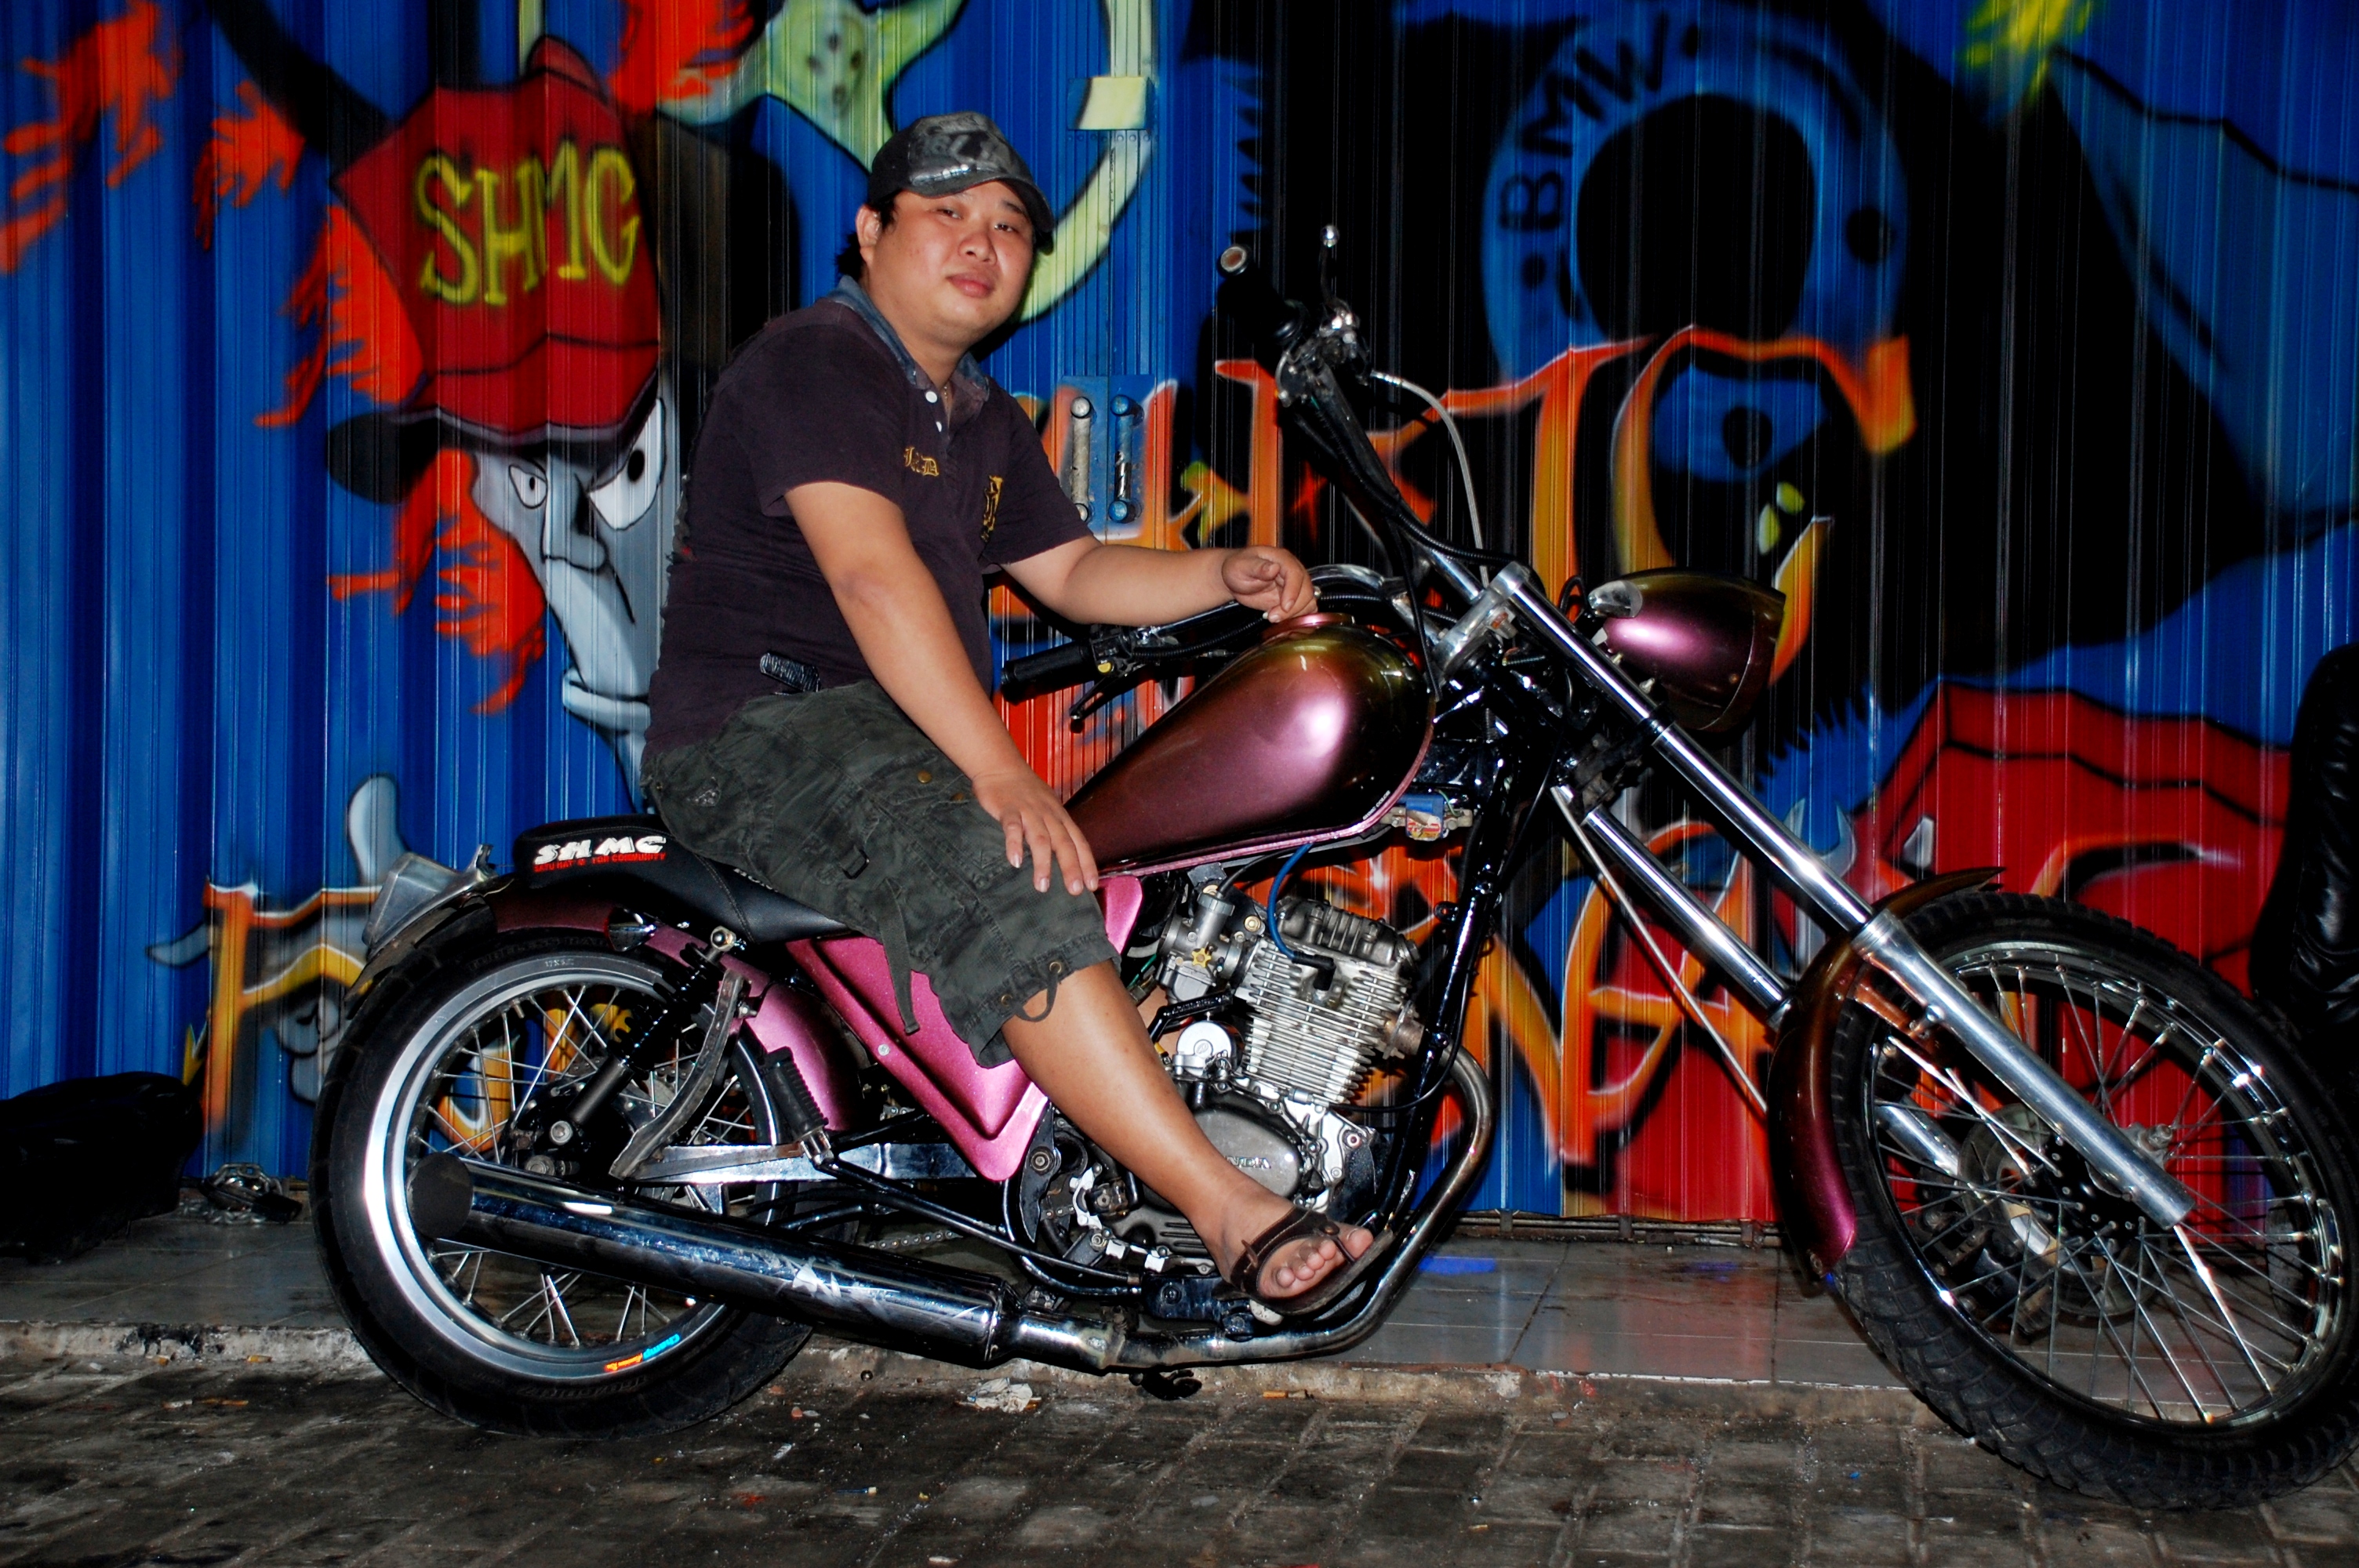 Koleksi Ide Modifikasi Motor Tiger Jadi Harley Terlengkap Velgy